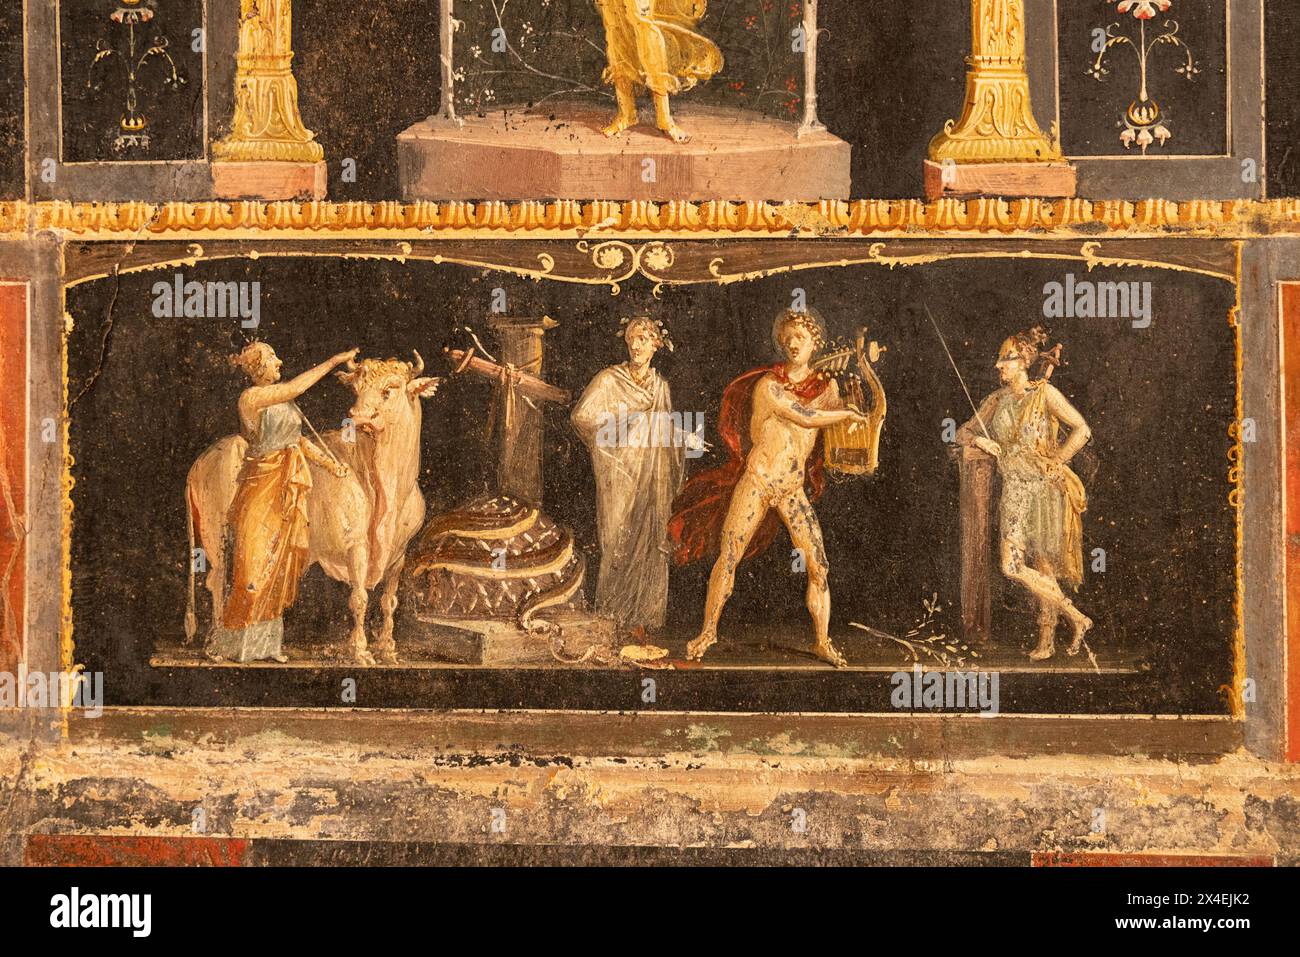 Fresque de Pompéi - détail des fresques de la villa de la Maison de Vettii, datant du 1er siècle après JC ; ruines de Pompéi, Campanie, Italie Banque D'Images